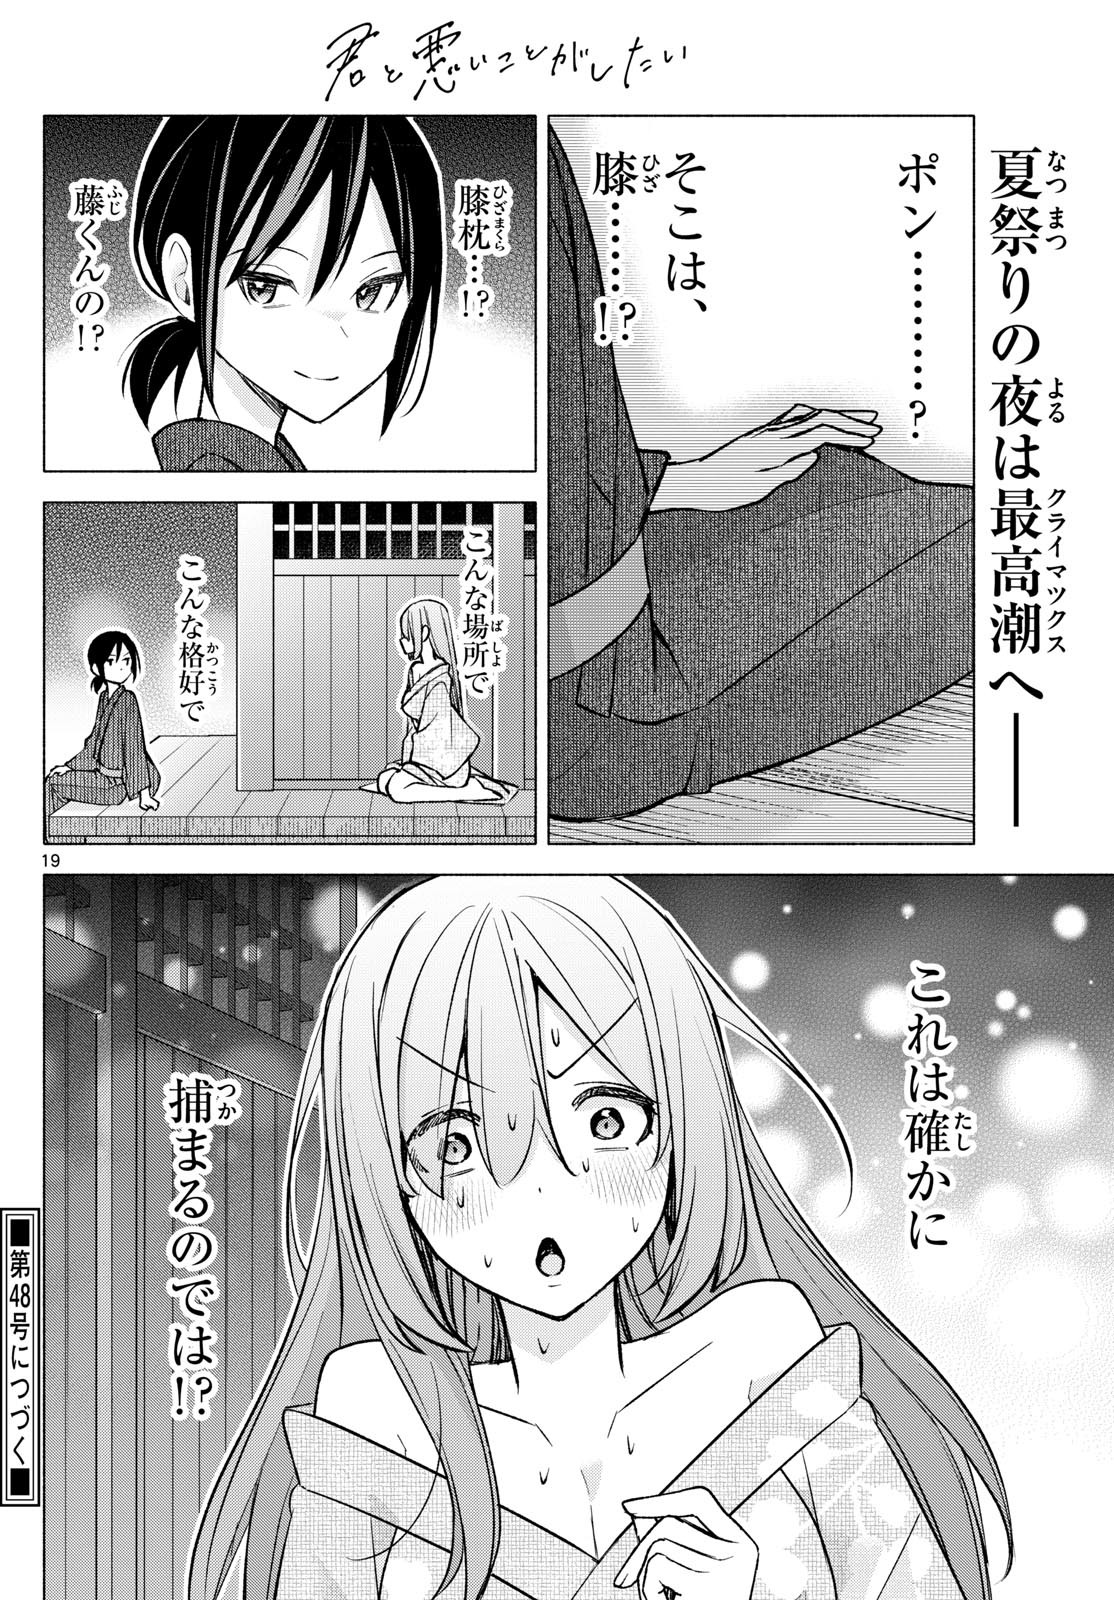 Kimi to Warui Koto ga Shitai - Chapter 048 - Page 19